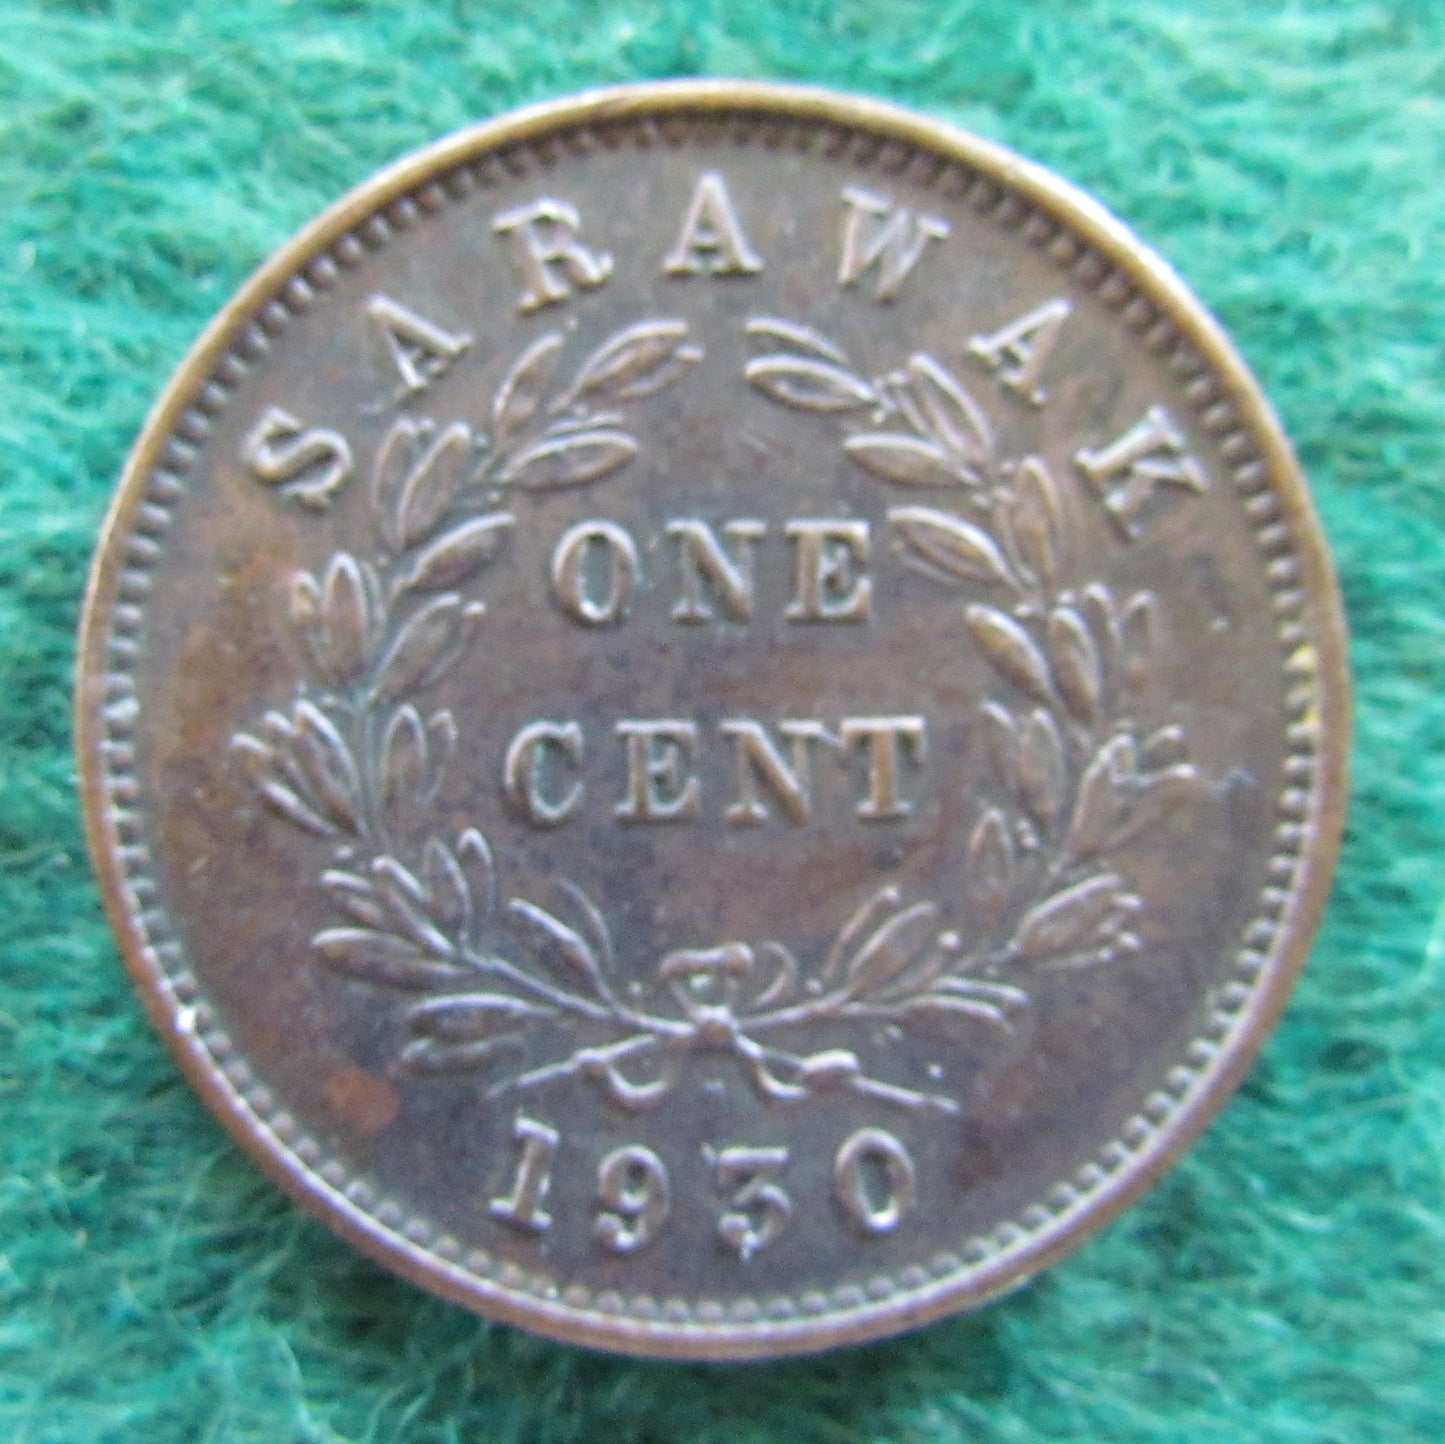 Sarawak 1930 H 1 Cent Coin C V Brooke Rajah